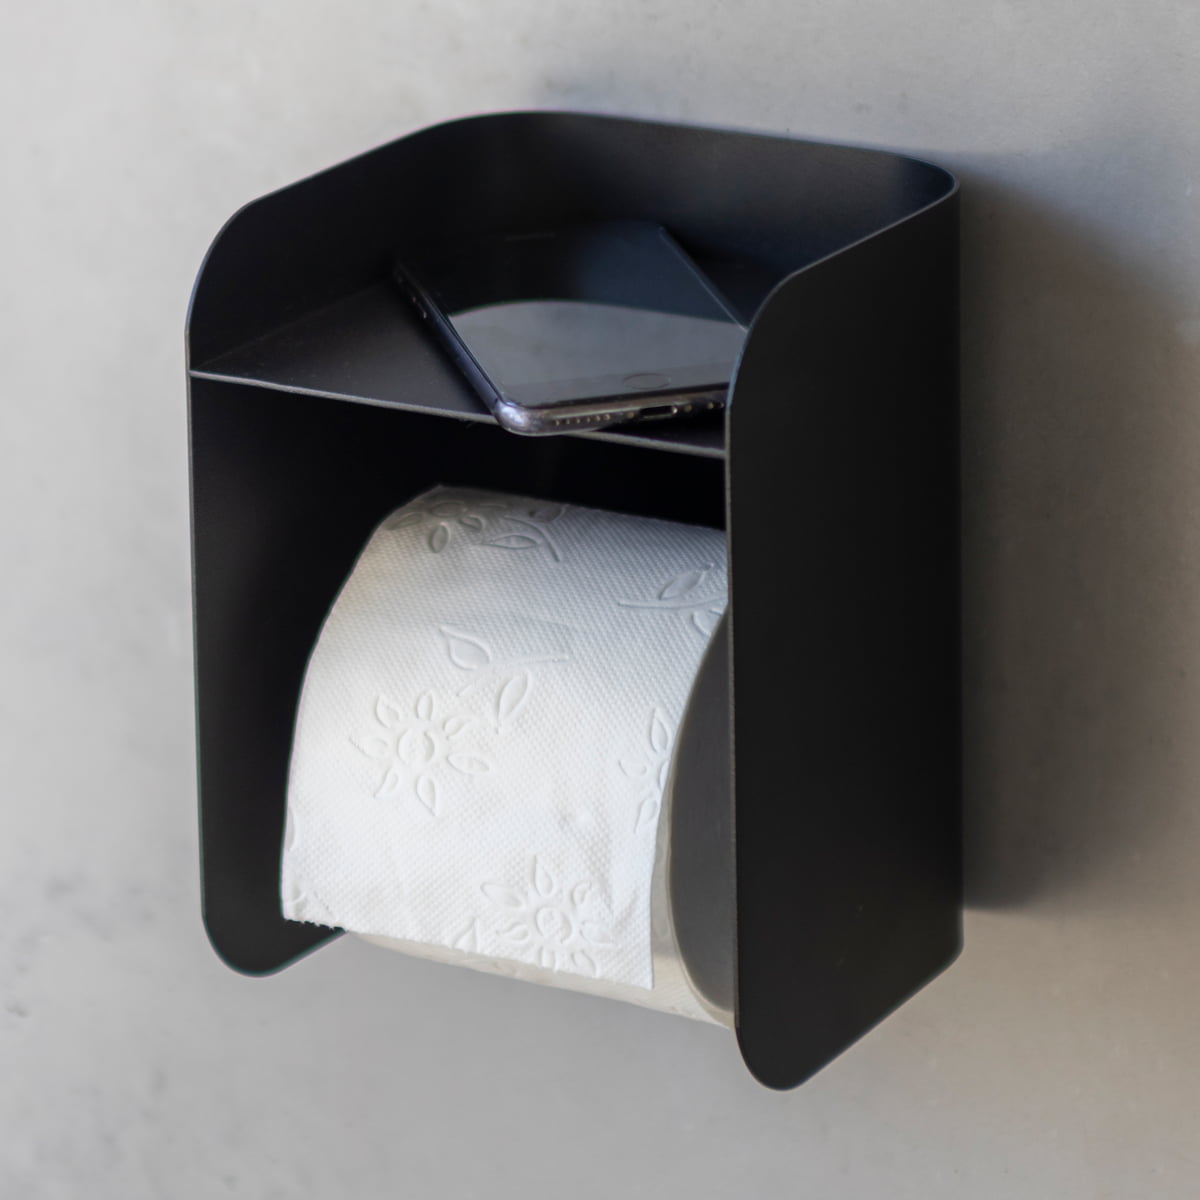 https://cdn.connox.com/m/100035/583996/media/Mette-Ditmer/AW-2022/Mette-Ditmer-Carry-Toilettenpapierhalter-mit-Ablage-schwarz-Situation-1.jpg